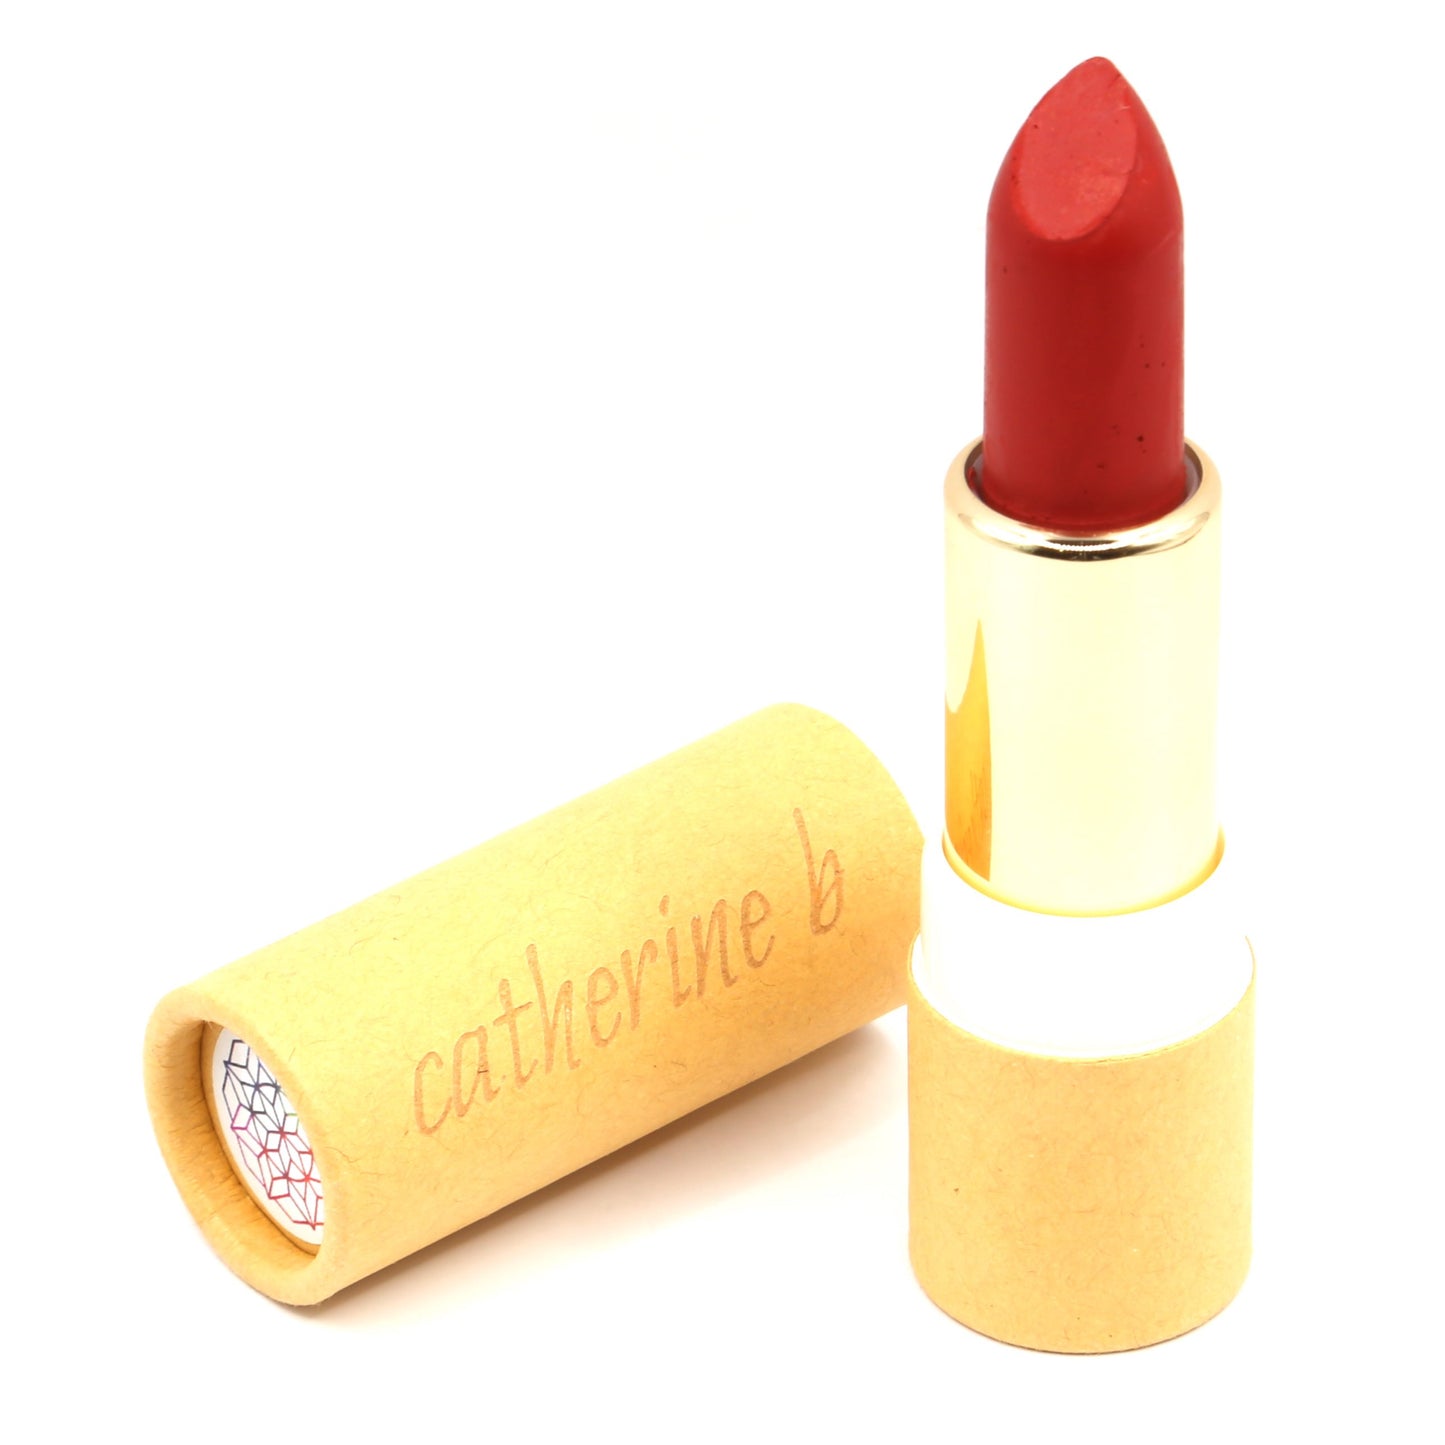 Brick Red Orange Based Lipstick